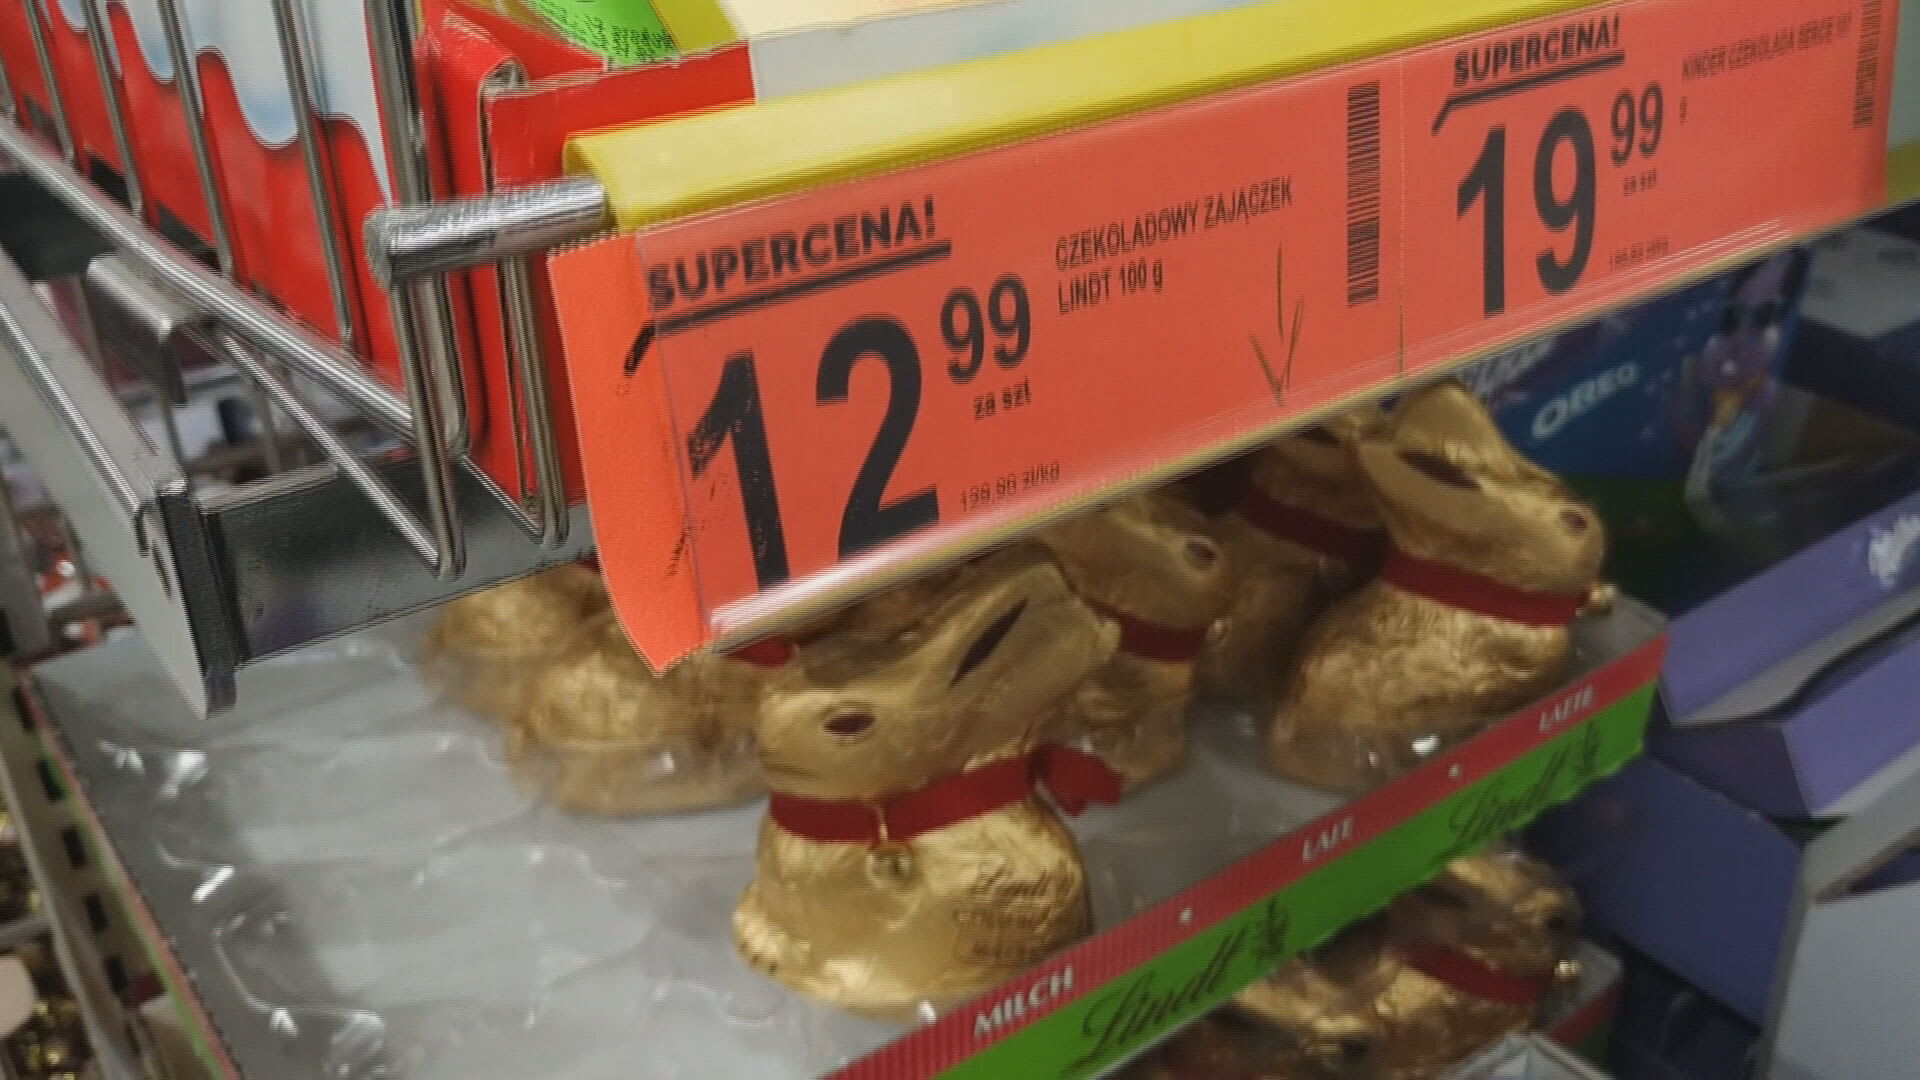 Velikonoční nákup vyšel v Česku jen o pár korun dráž než v Polsku